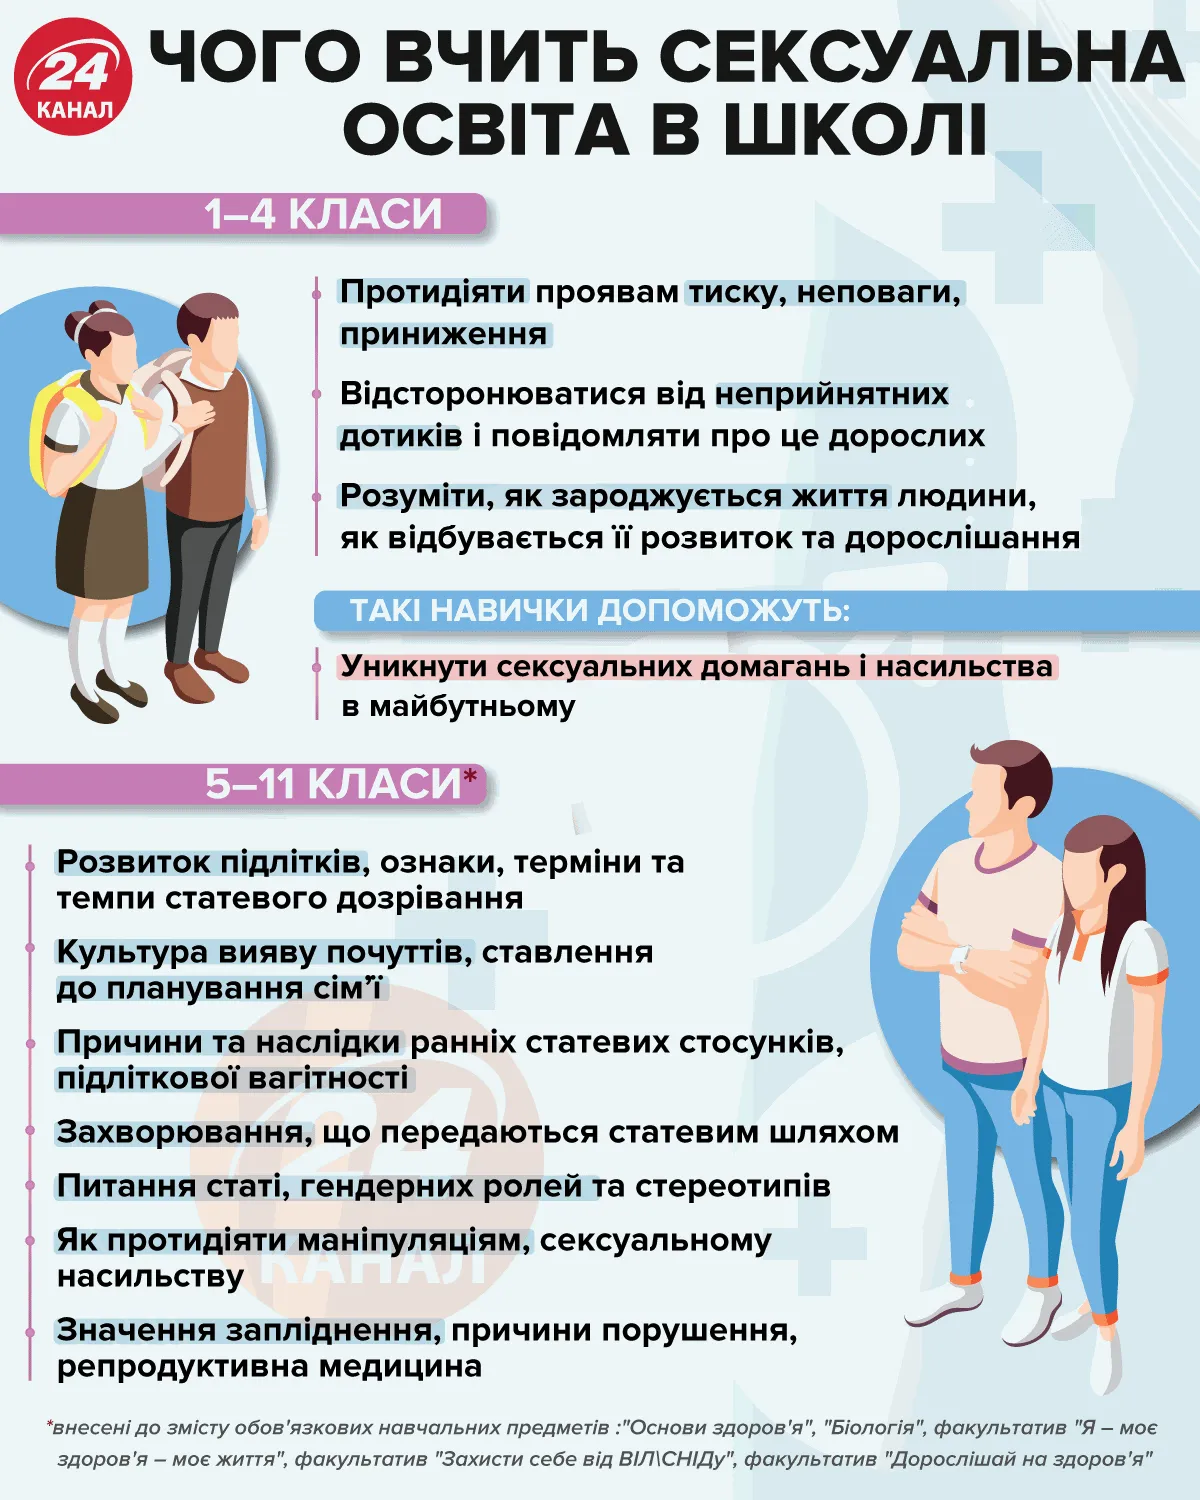 Чему учит школьников сексуальное образование / Инфографика 24 канала